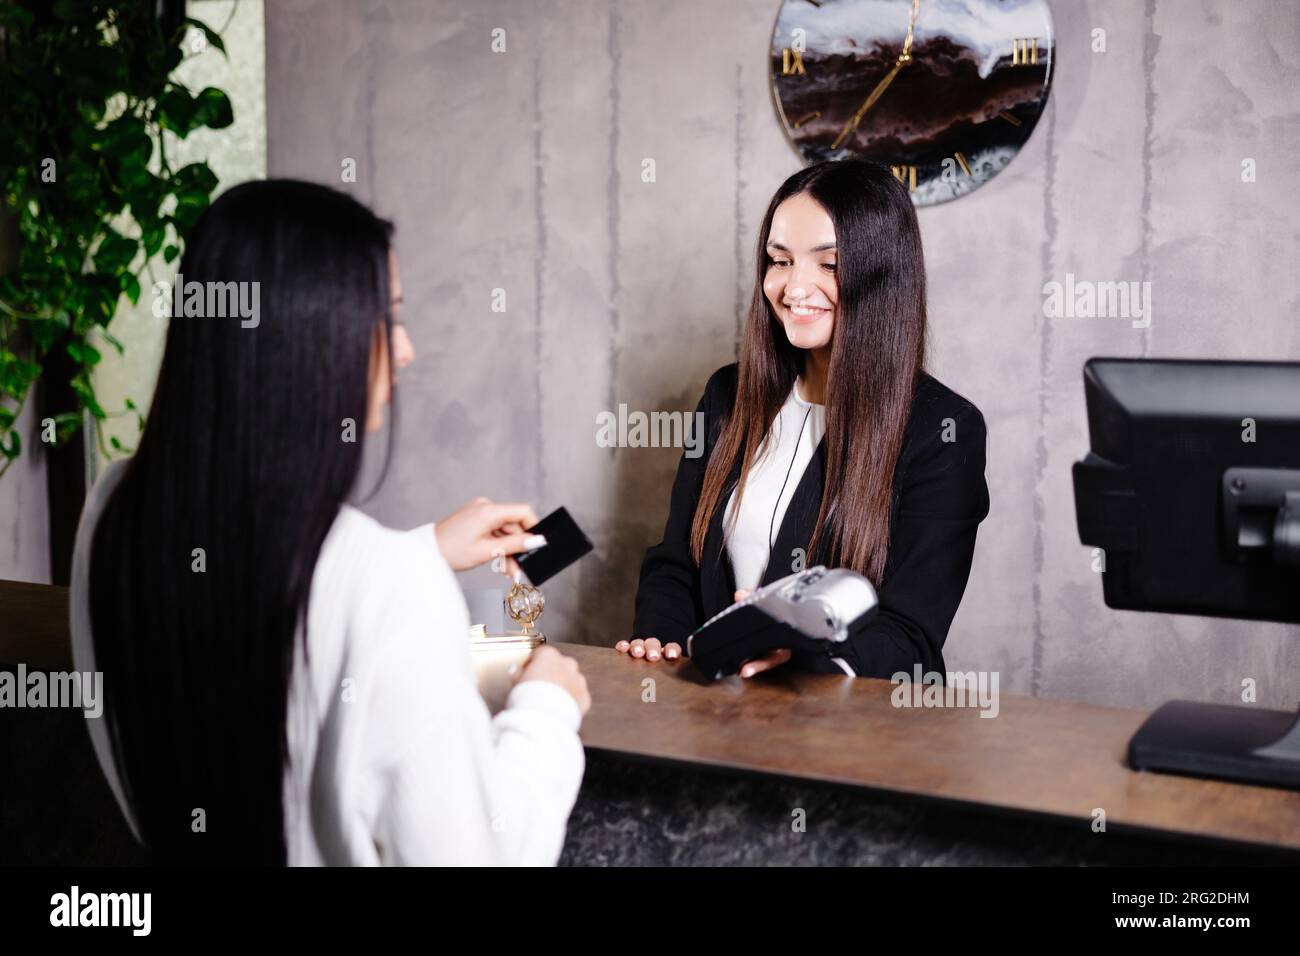 Femme touchant la carte de crédit au terminal du lecteur de carte pour payer les services de l'hôtel. Banque D'Images